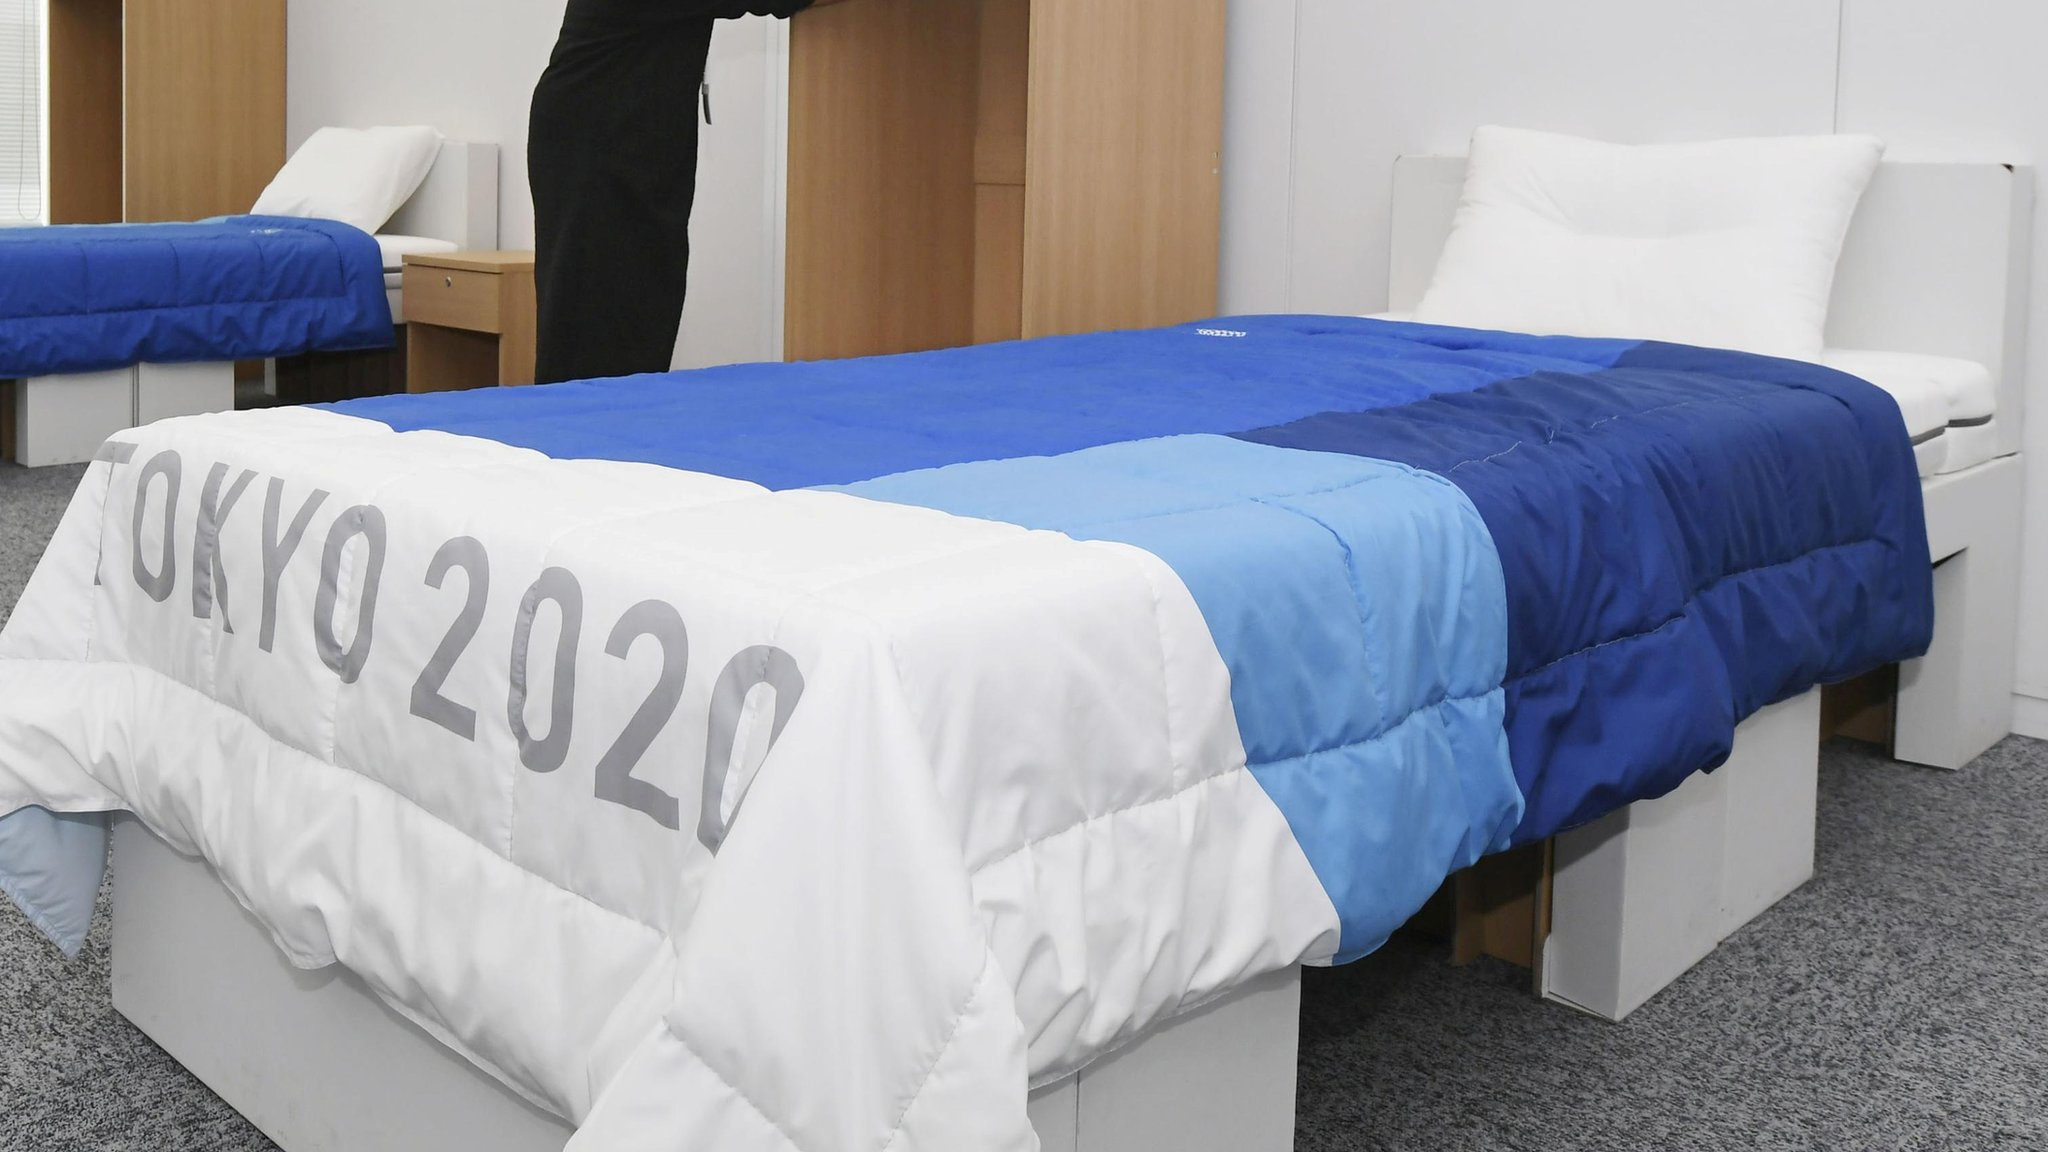 Кровати на Олимпиаде в Токио